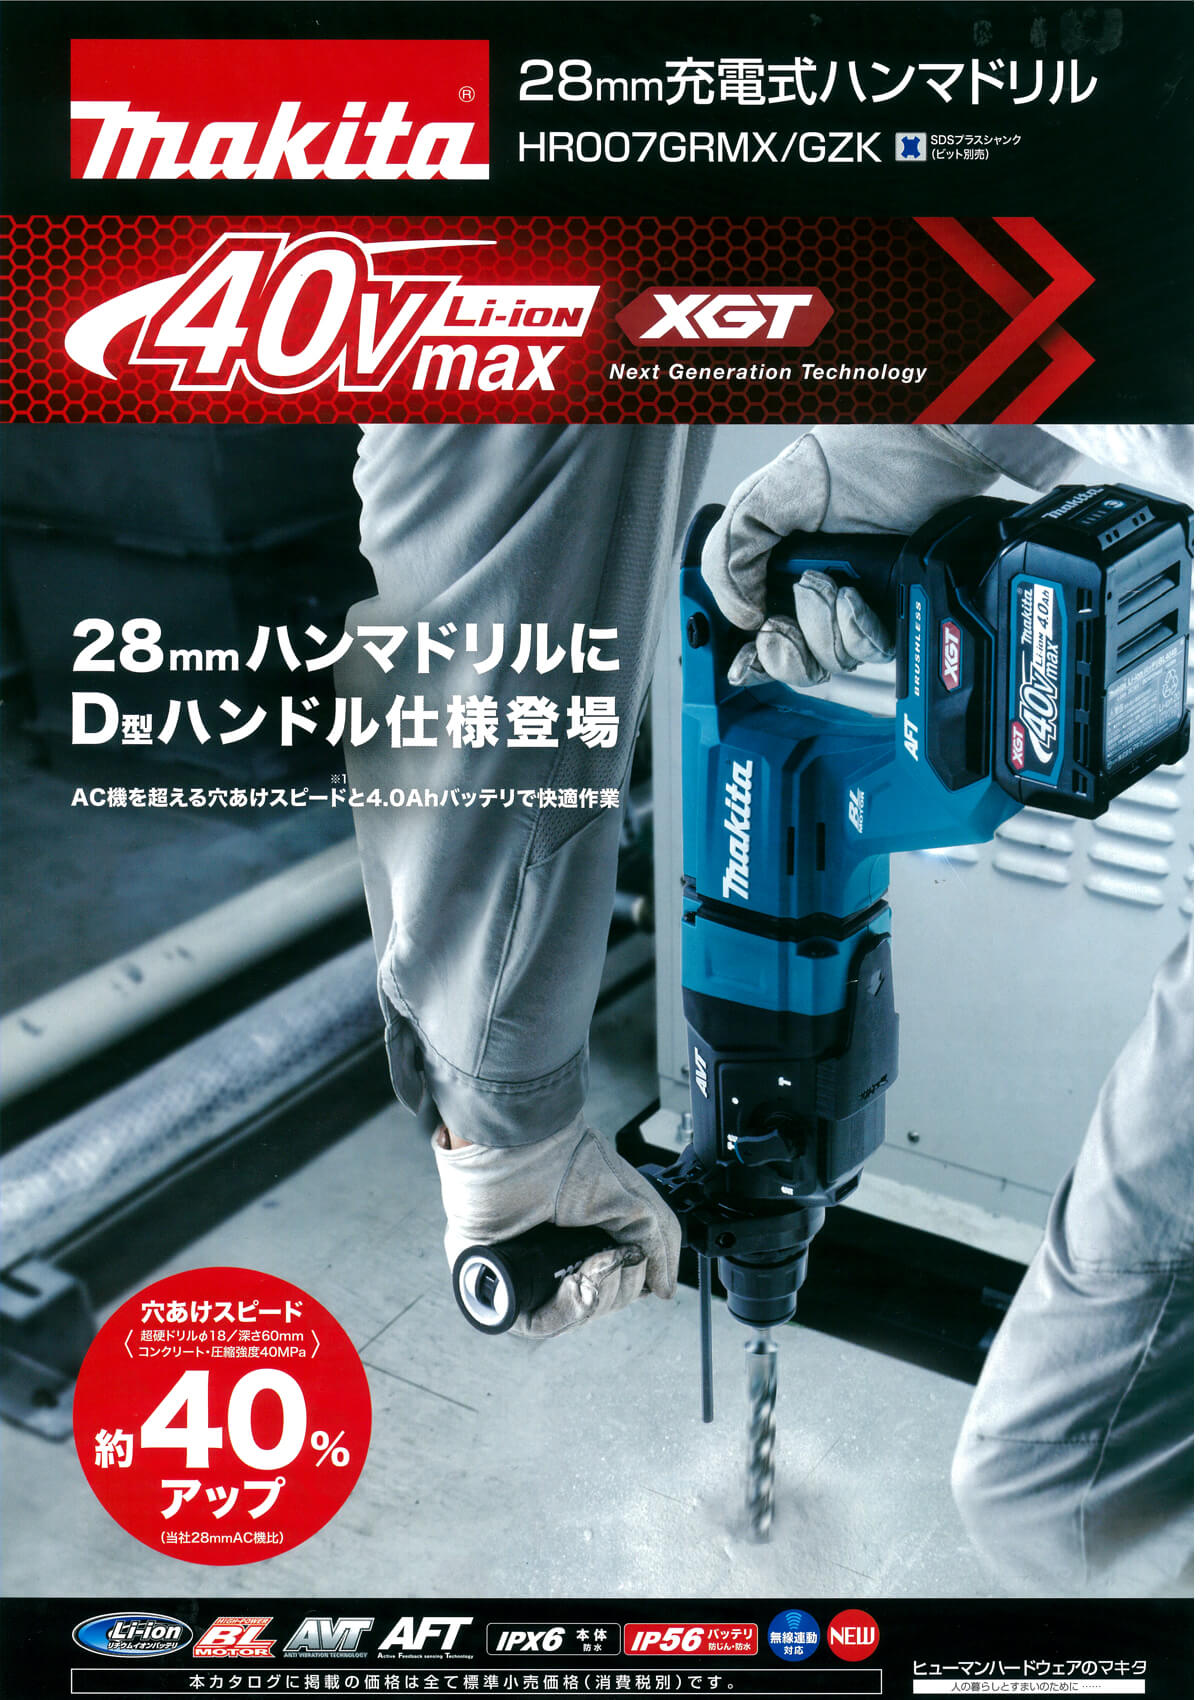 マキタ HR007GRMX 40Vmax 28mm充電式ハンマドリル ウエダ金物【公式 